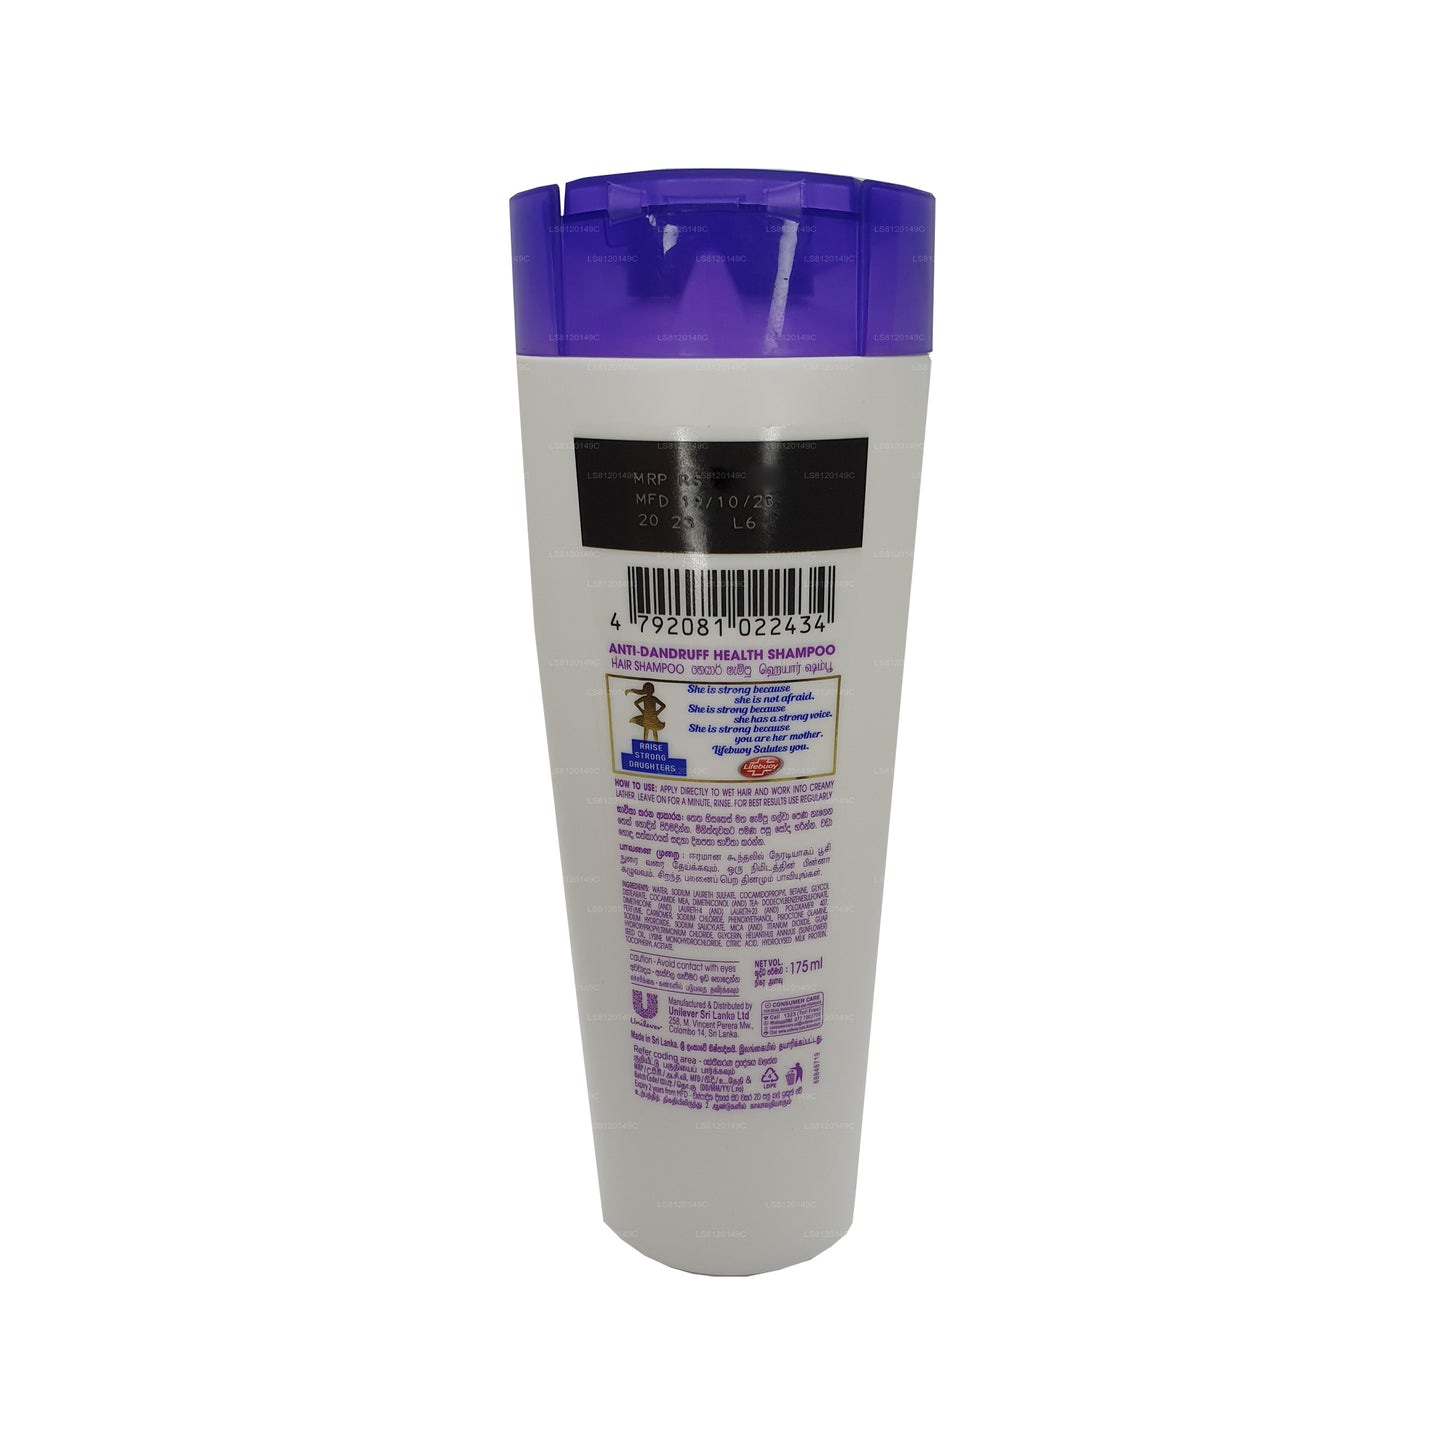 Lifebuoy kõõmavastane šampoon (175ml)